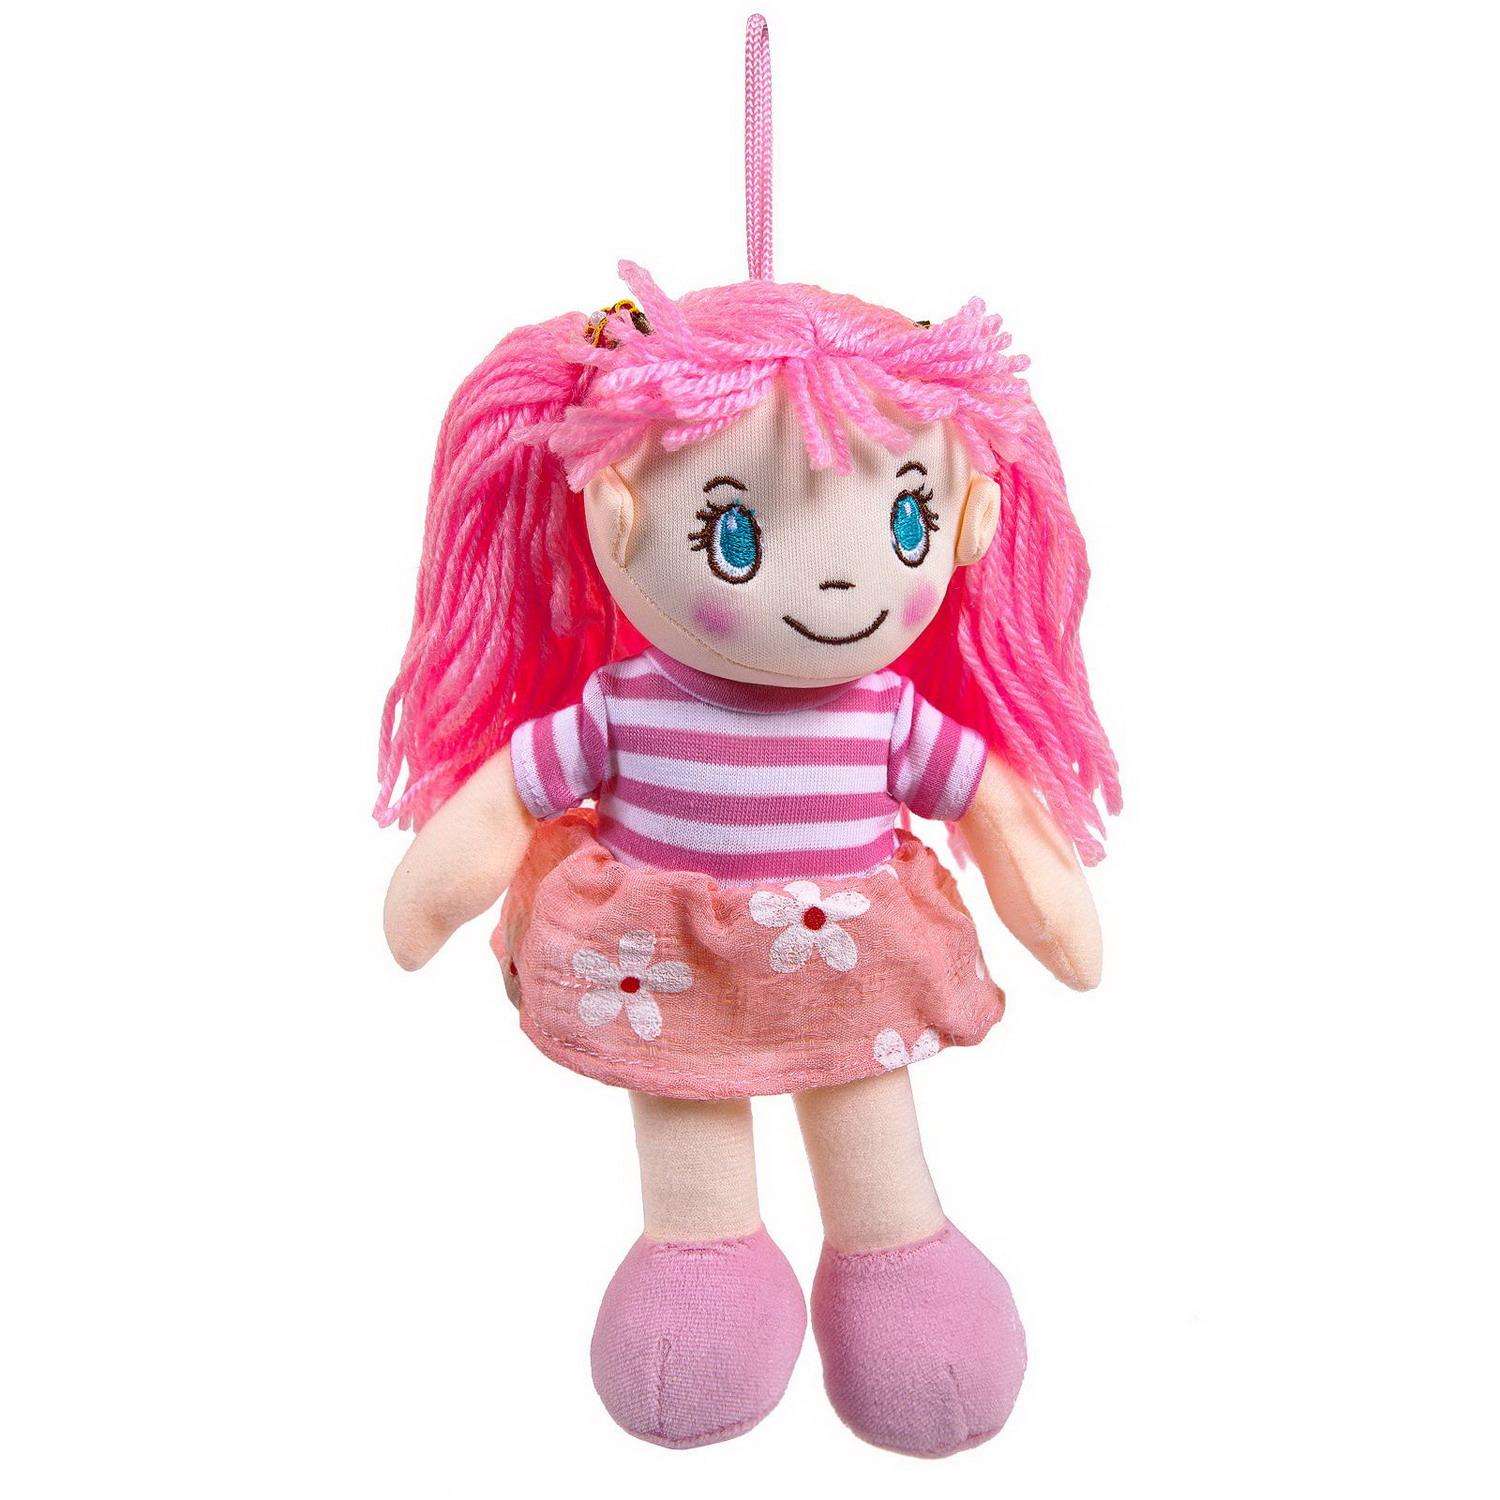 Кукла ABTOYS Мягкое сердце мягконабивная в розовом платье 20 см M6032 - фото 3